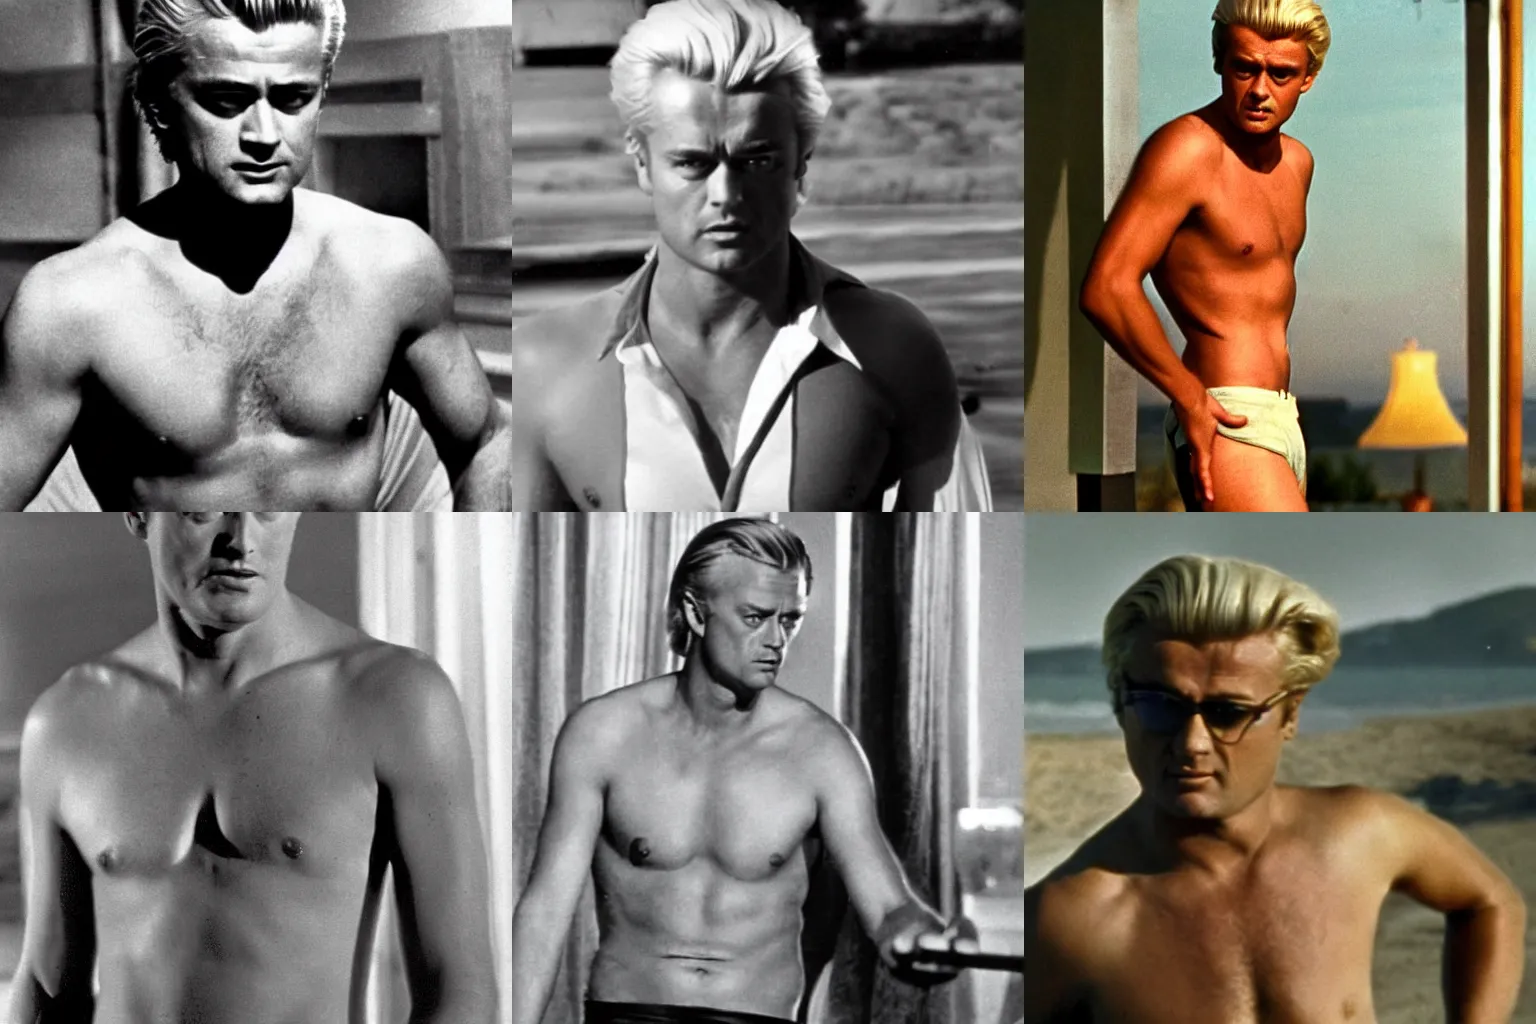 Prompt: Geert Wilders shirtless action filmstill, 1960s spy, golden hour